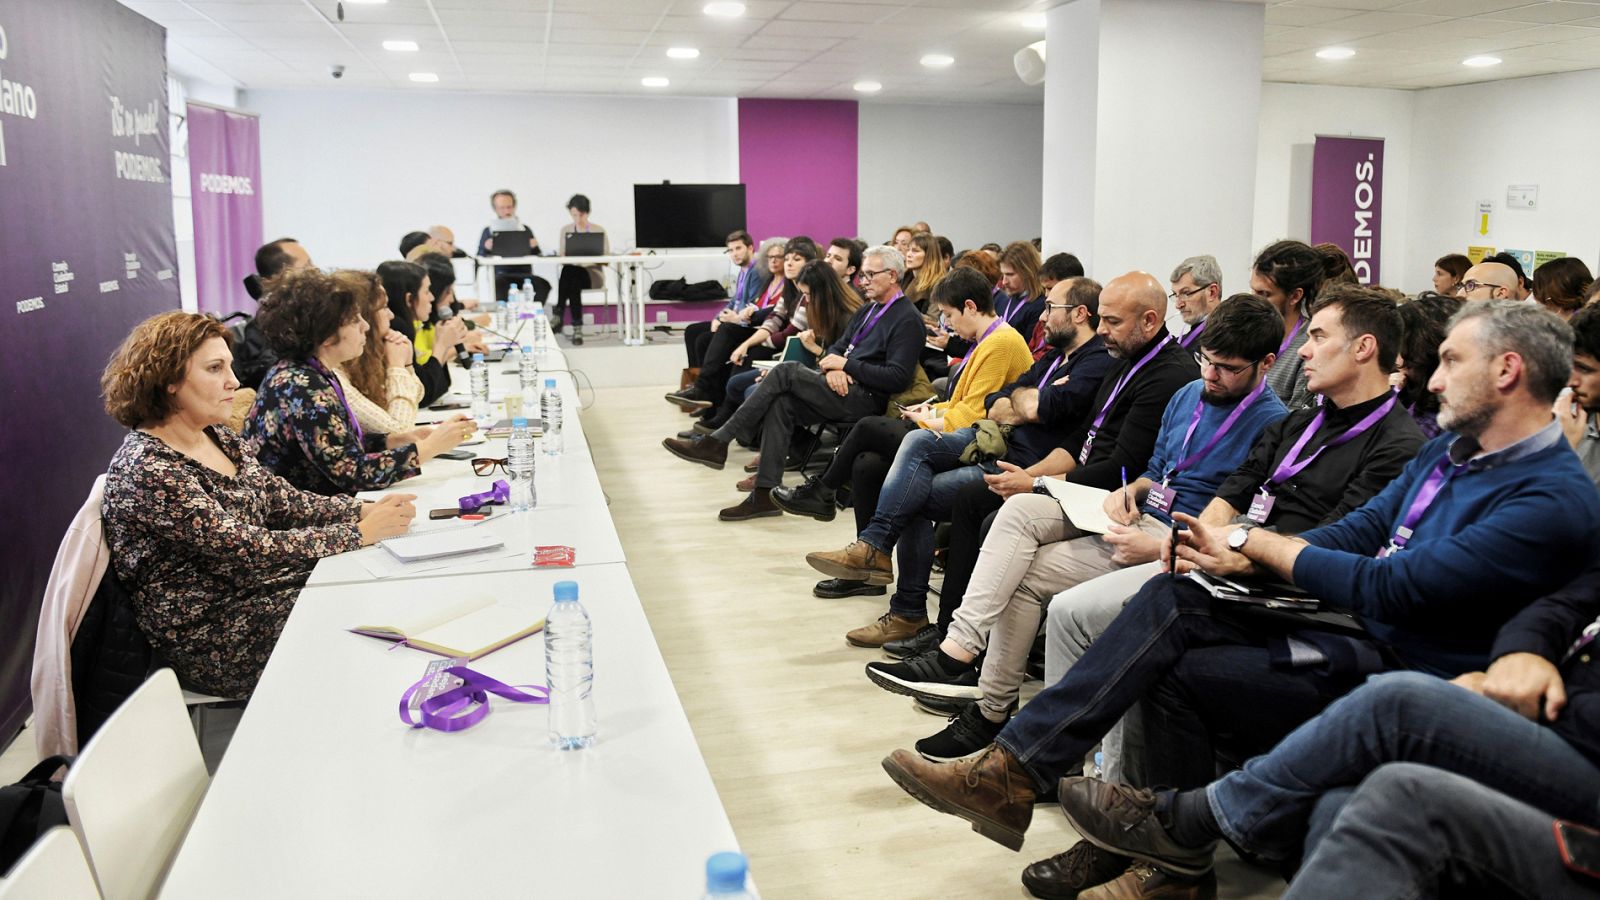 Podemos Madrid : Podemos deja en manos de Madrid la decisión sobre la confluencia con Errejón - RTVE.es